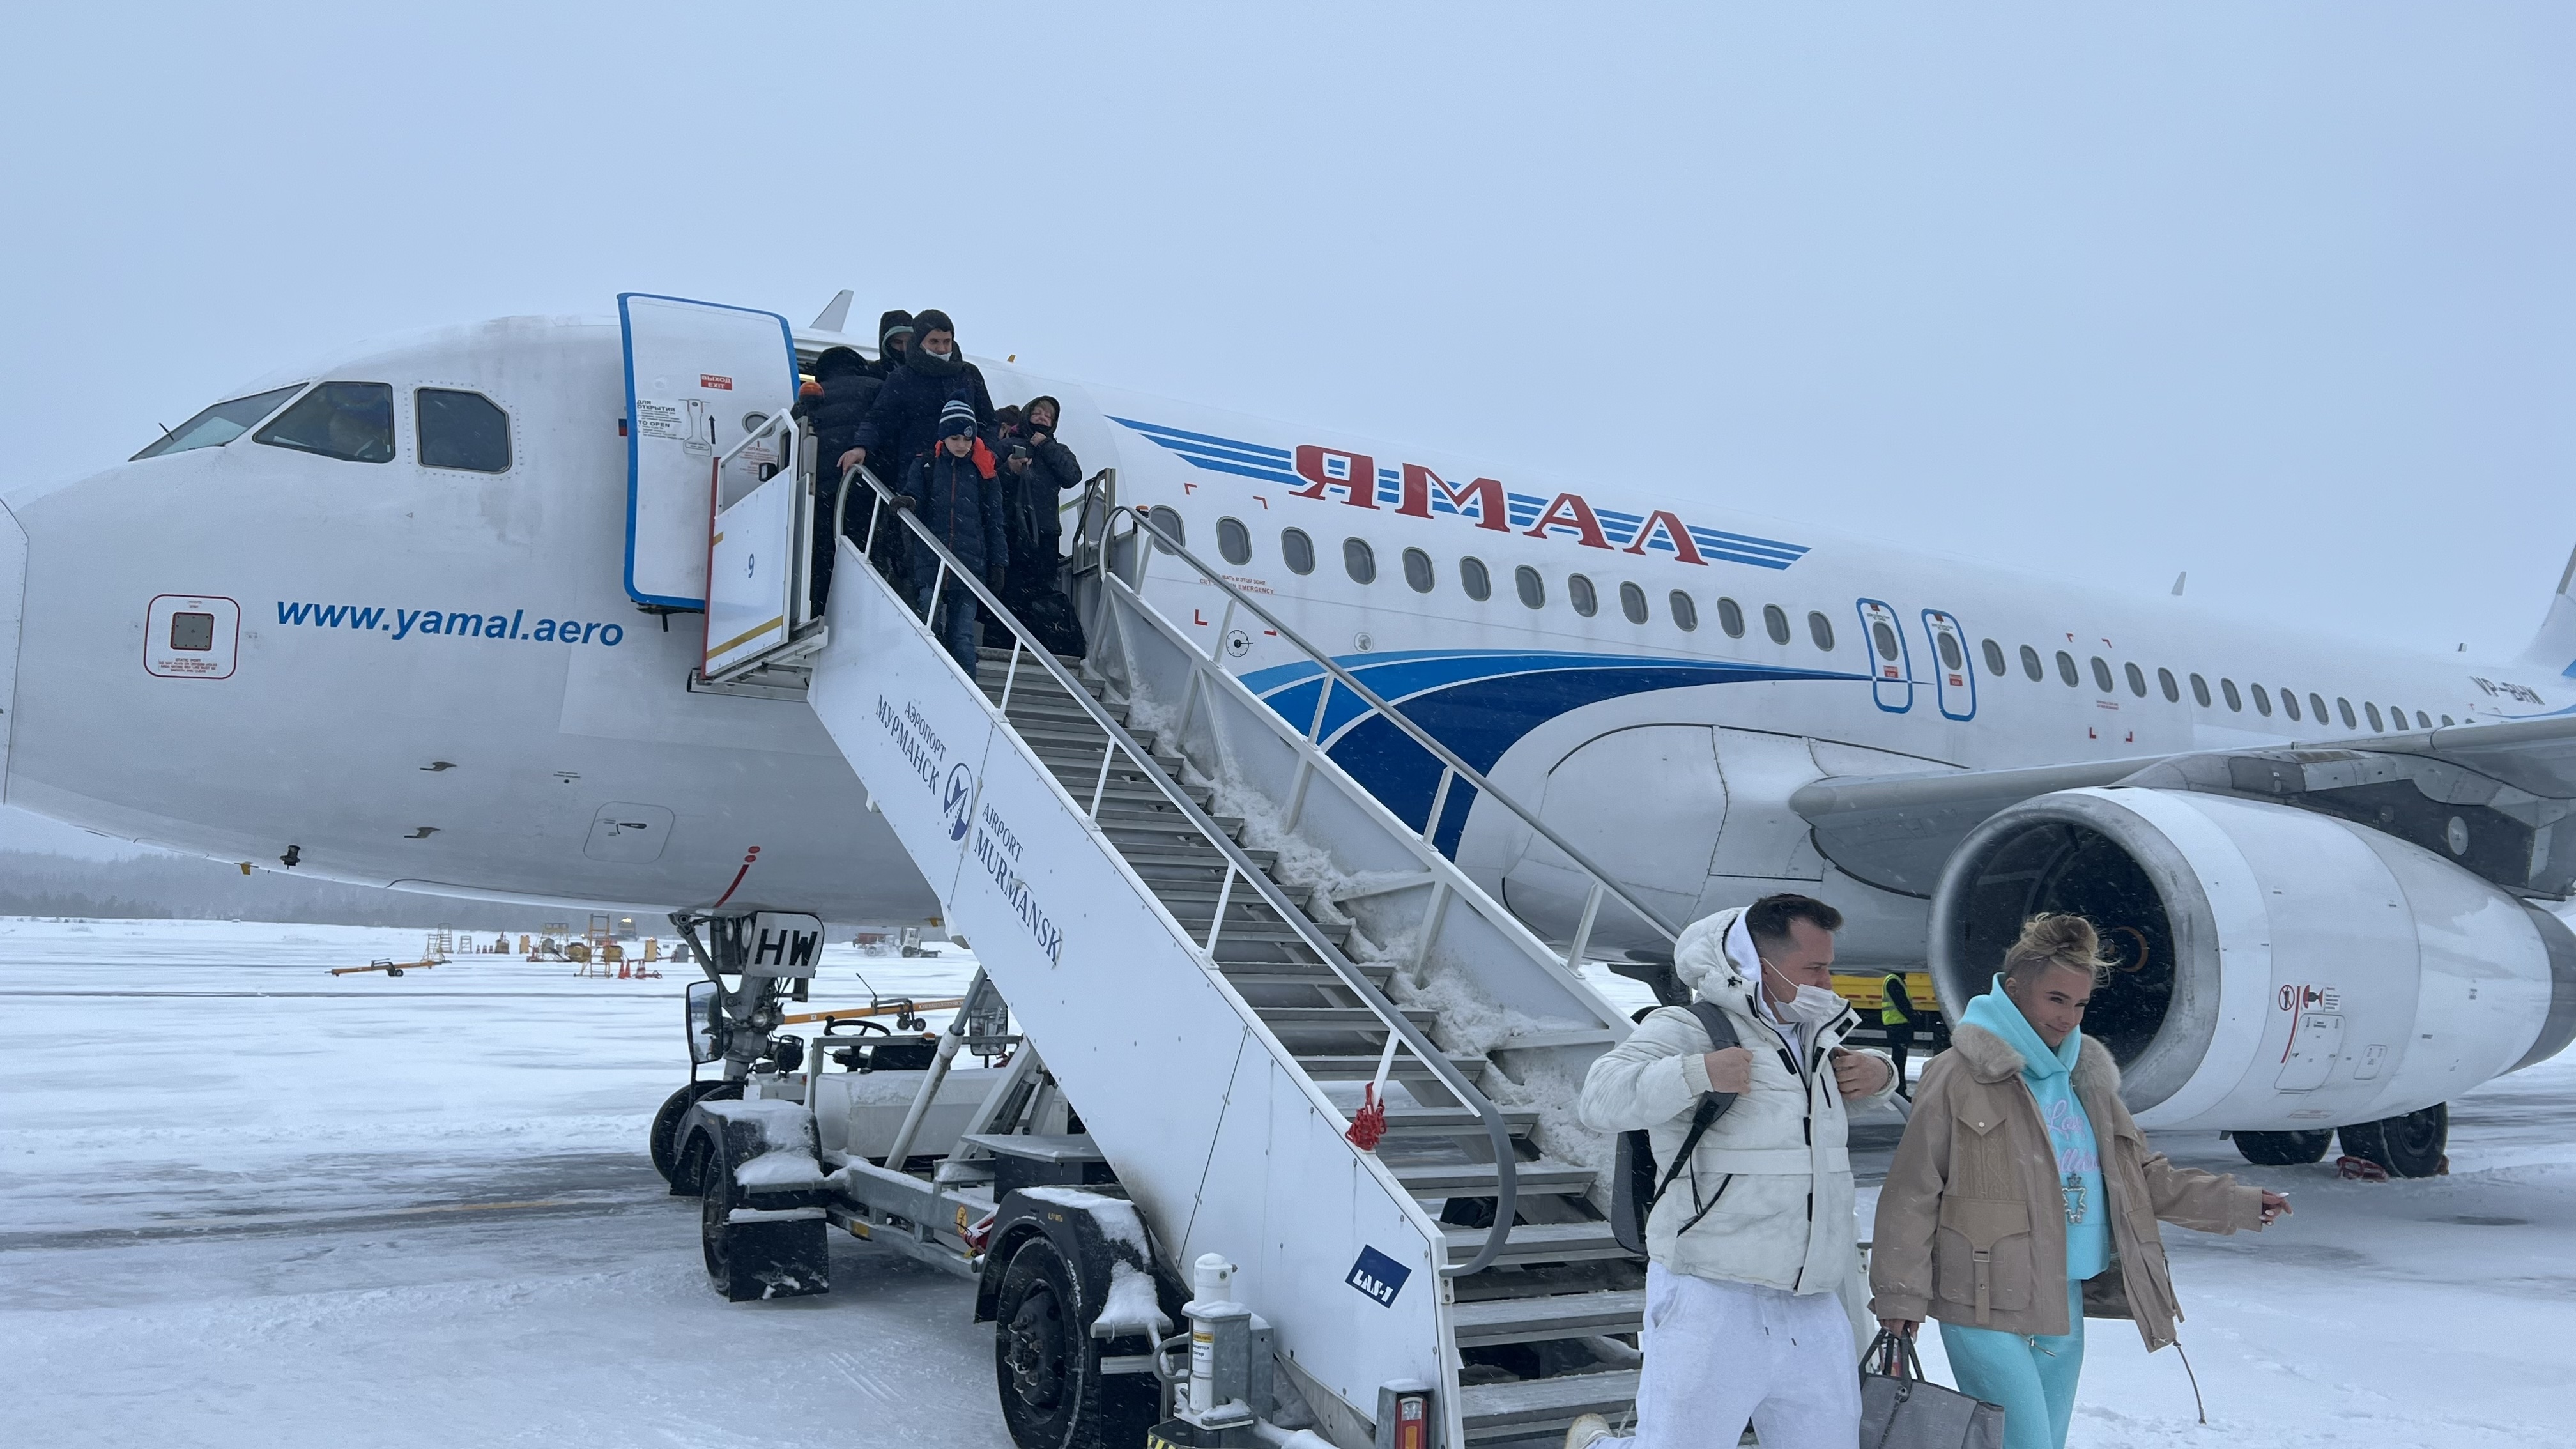 Первый туристический чартер прилетел в Мурманск в этом зимнем сезоне